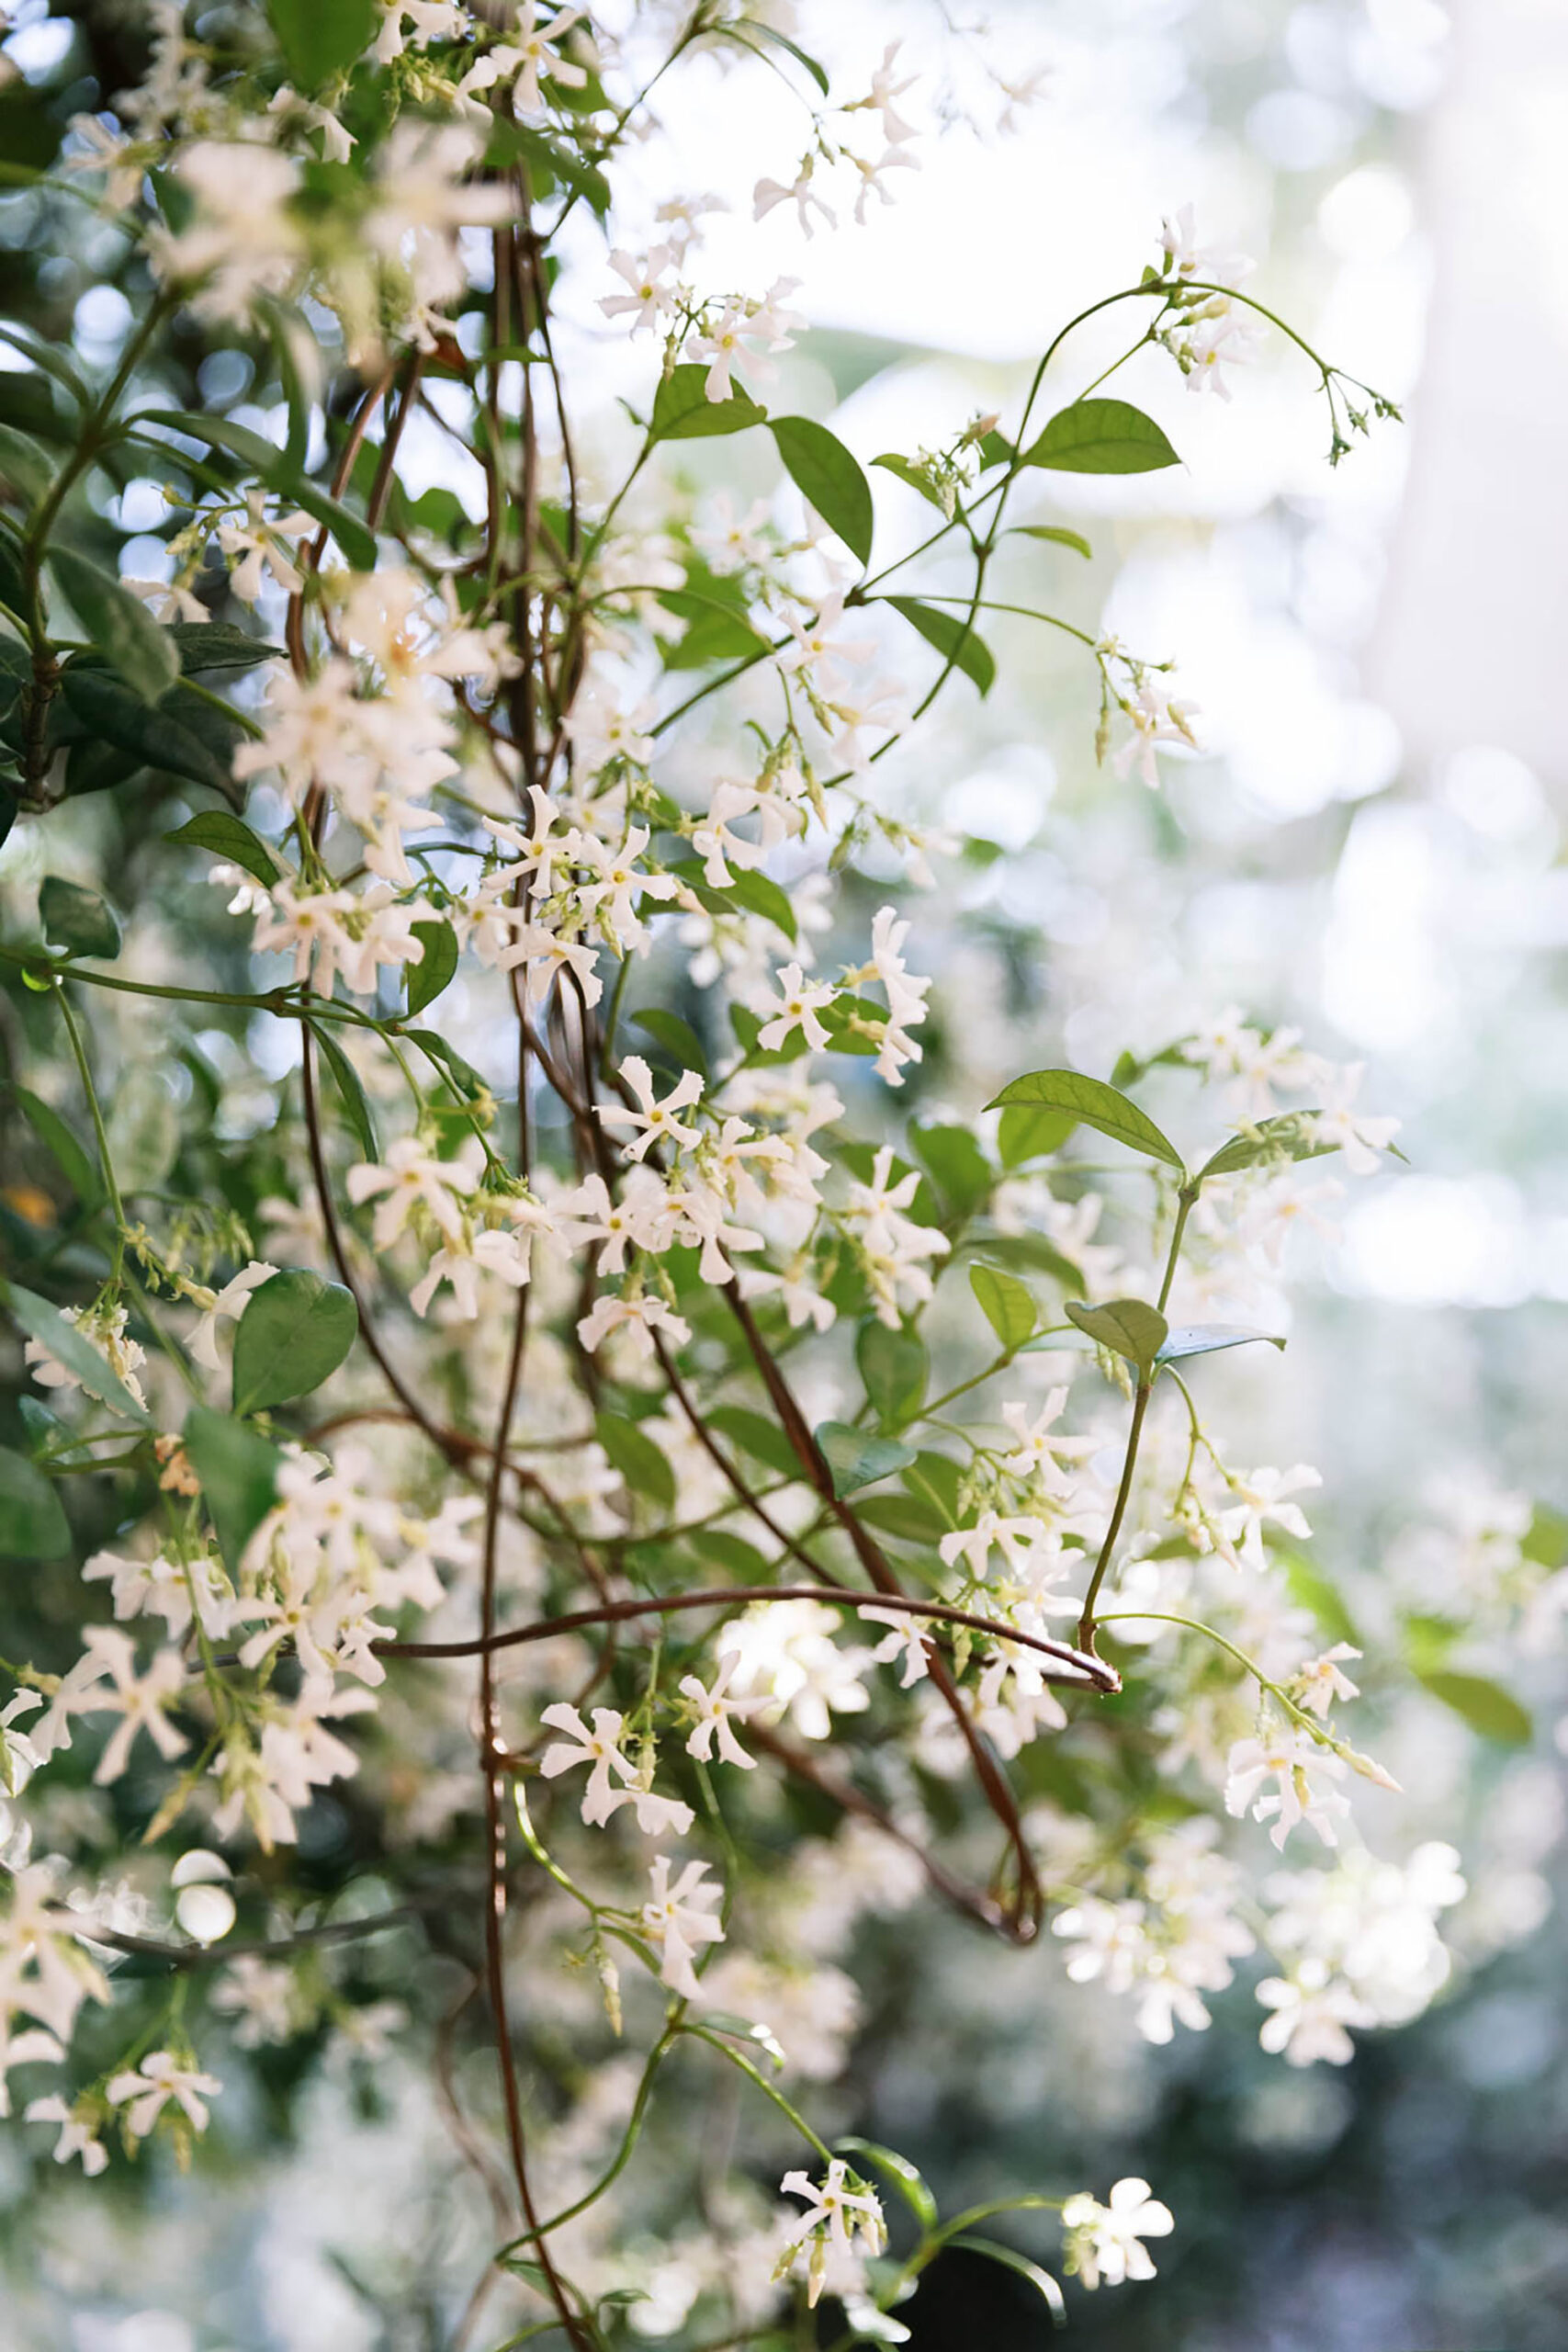 Blooming sweet jasmine vine covered in flowers